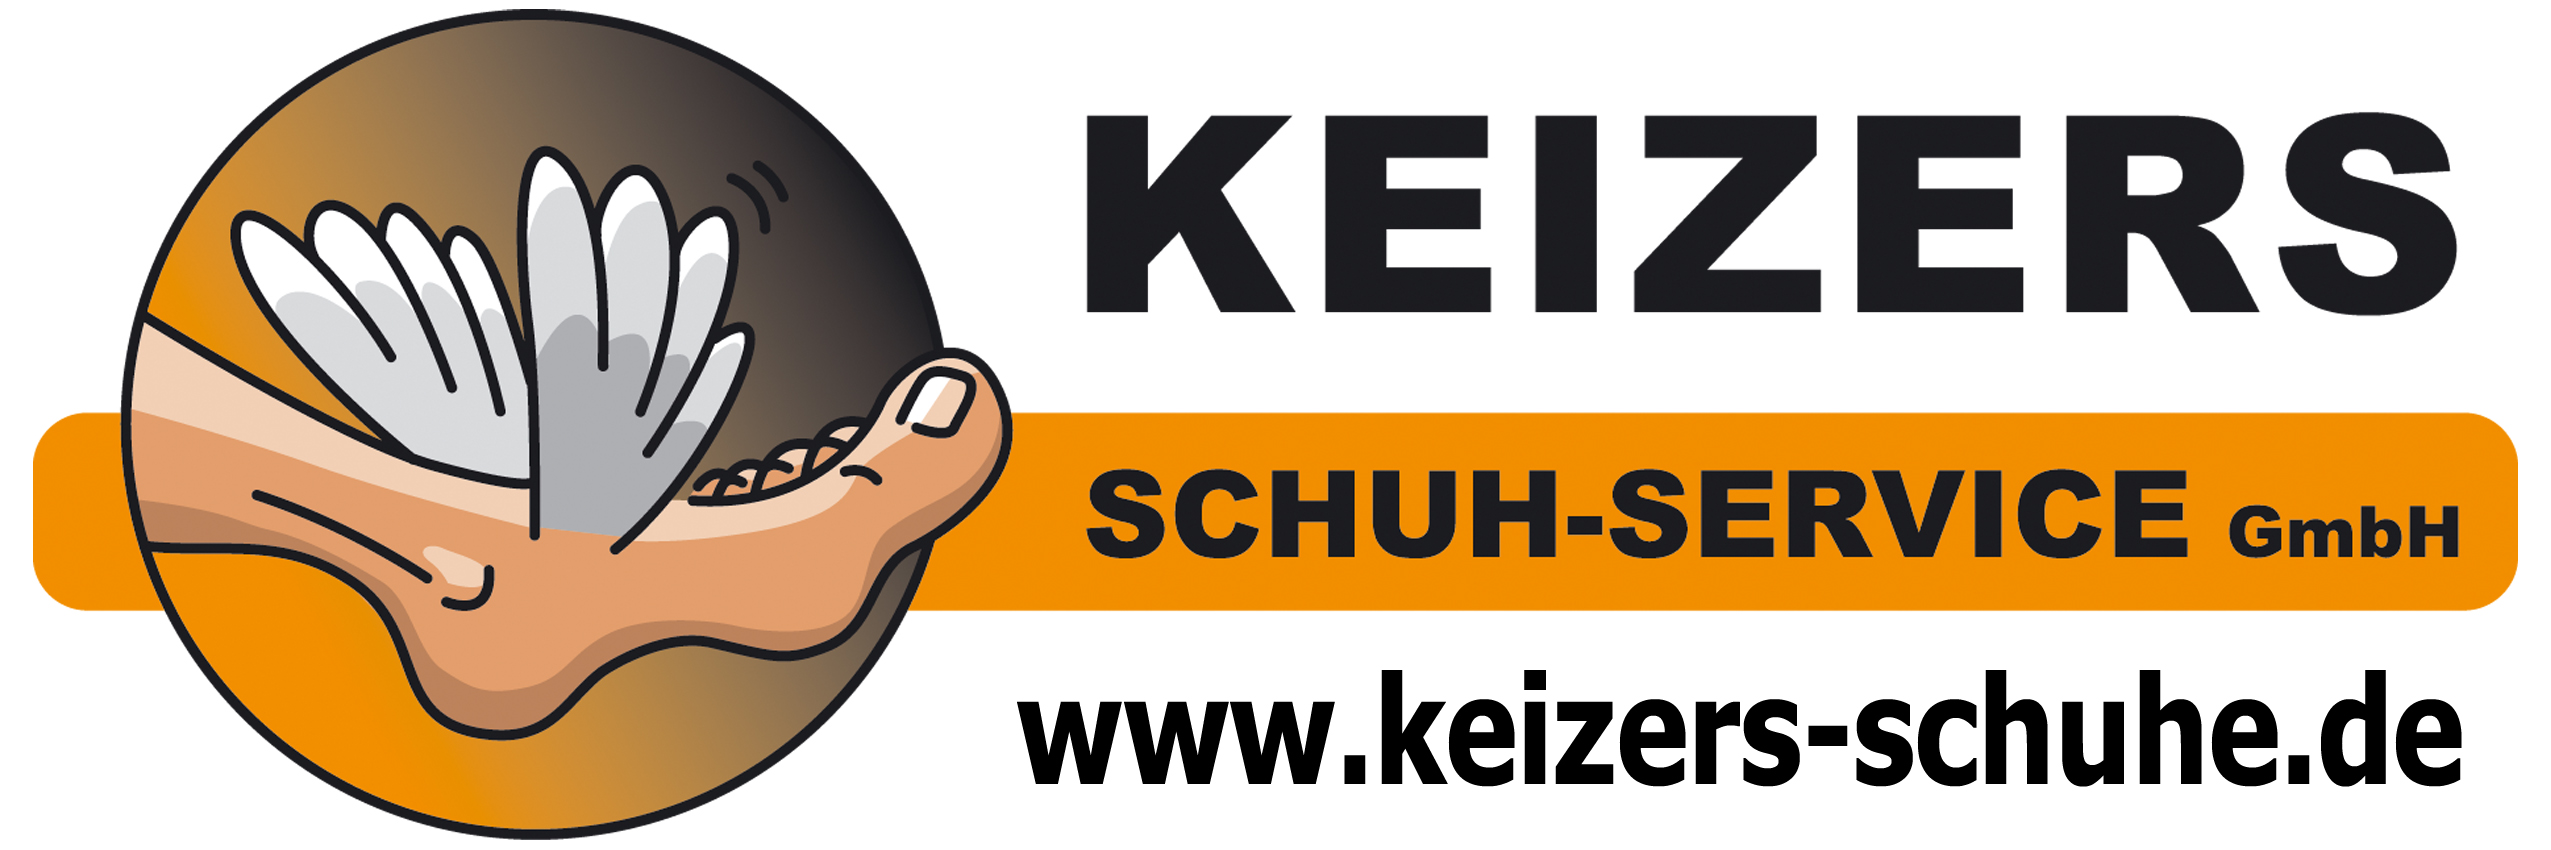 (c) Keizers-schuhe.de